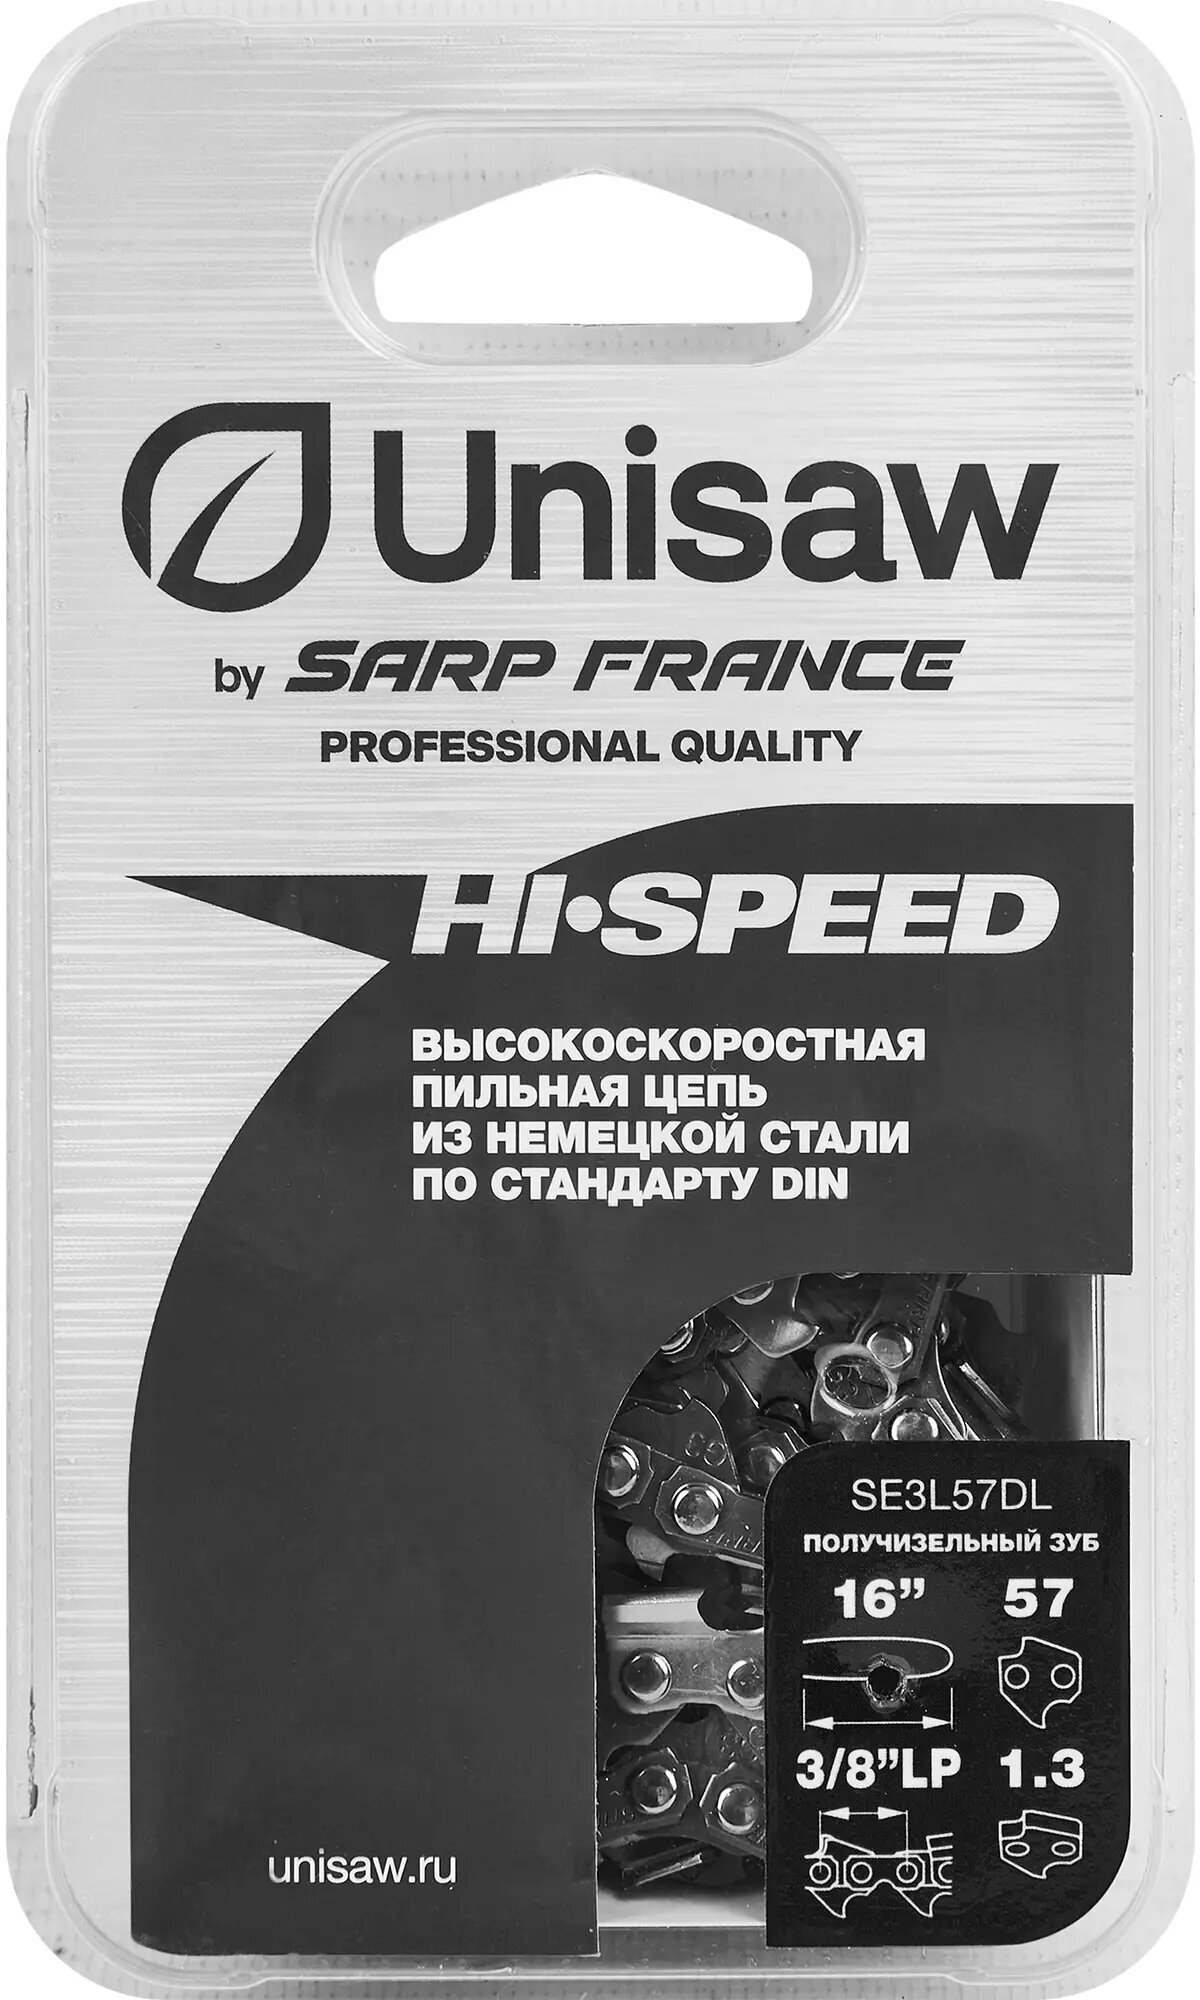 Цепь 16" 3/8" 13 (57 звеньев) Unisaw Professional Quality